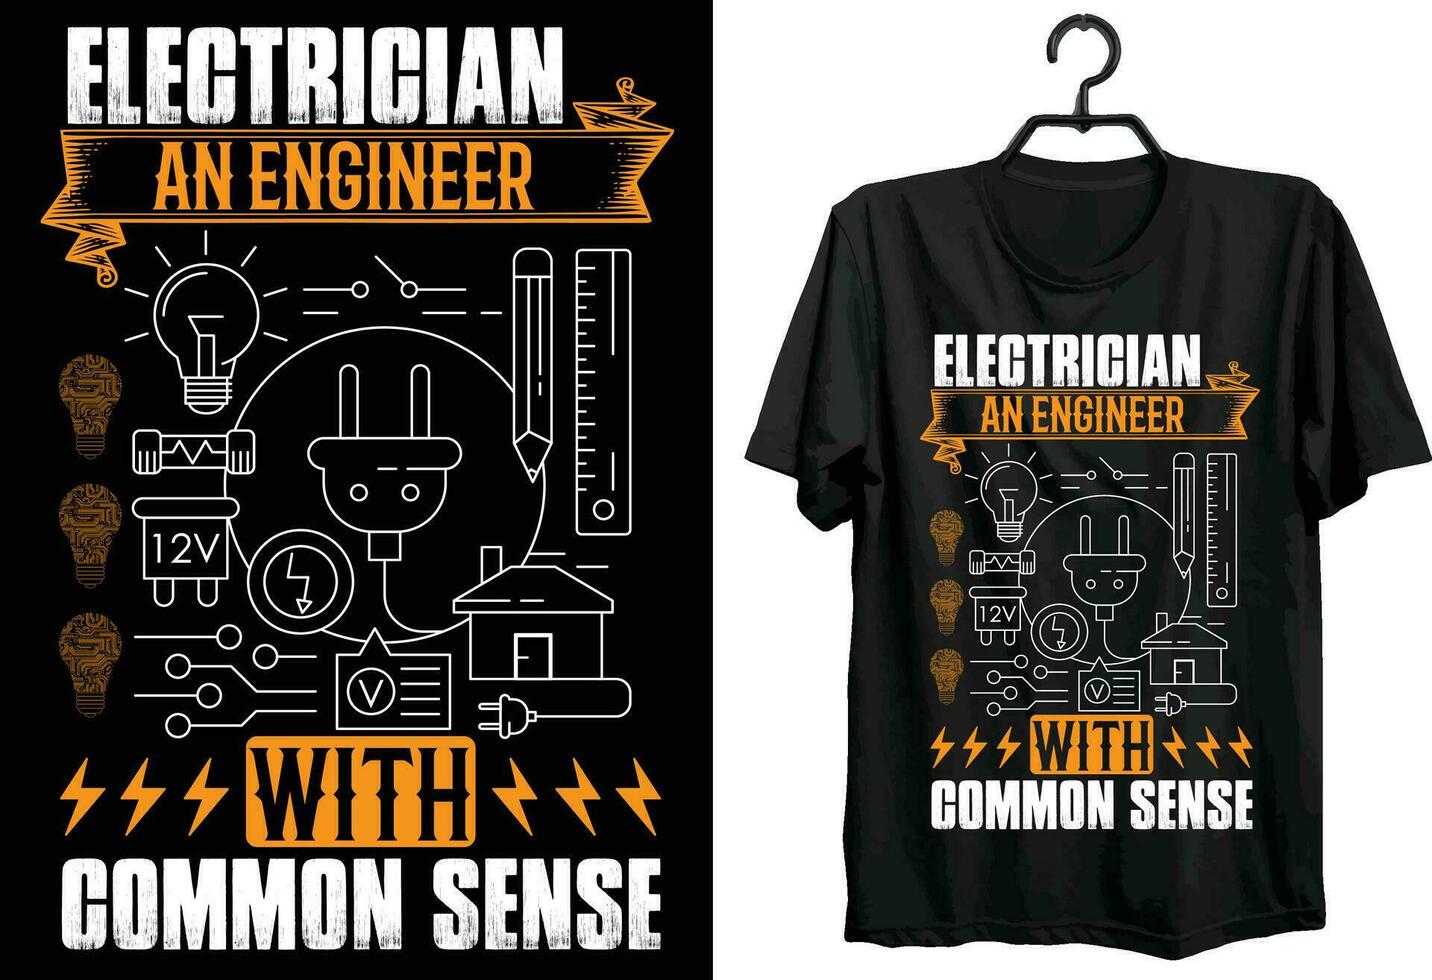 elektriker ett ingenjör med allmänning känsla. elektrisk teknik t-shirt design. rolig gåva Artikel elektrisk teknik t-shirt design för elektrisk ingenjörer. vektor